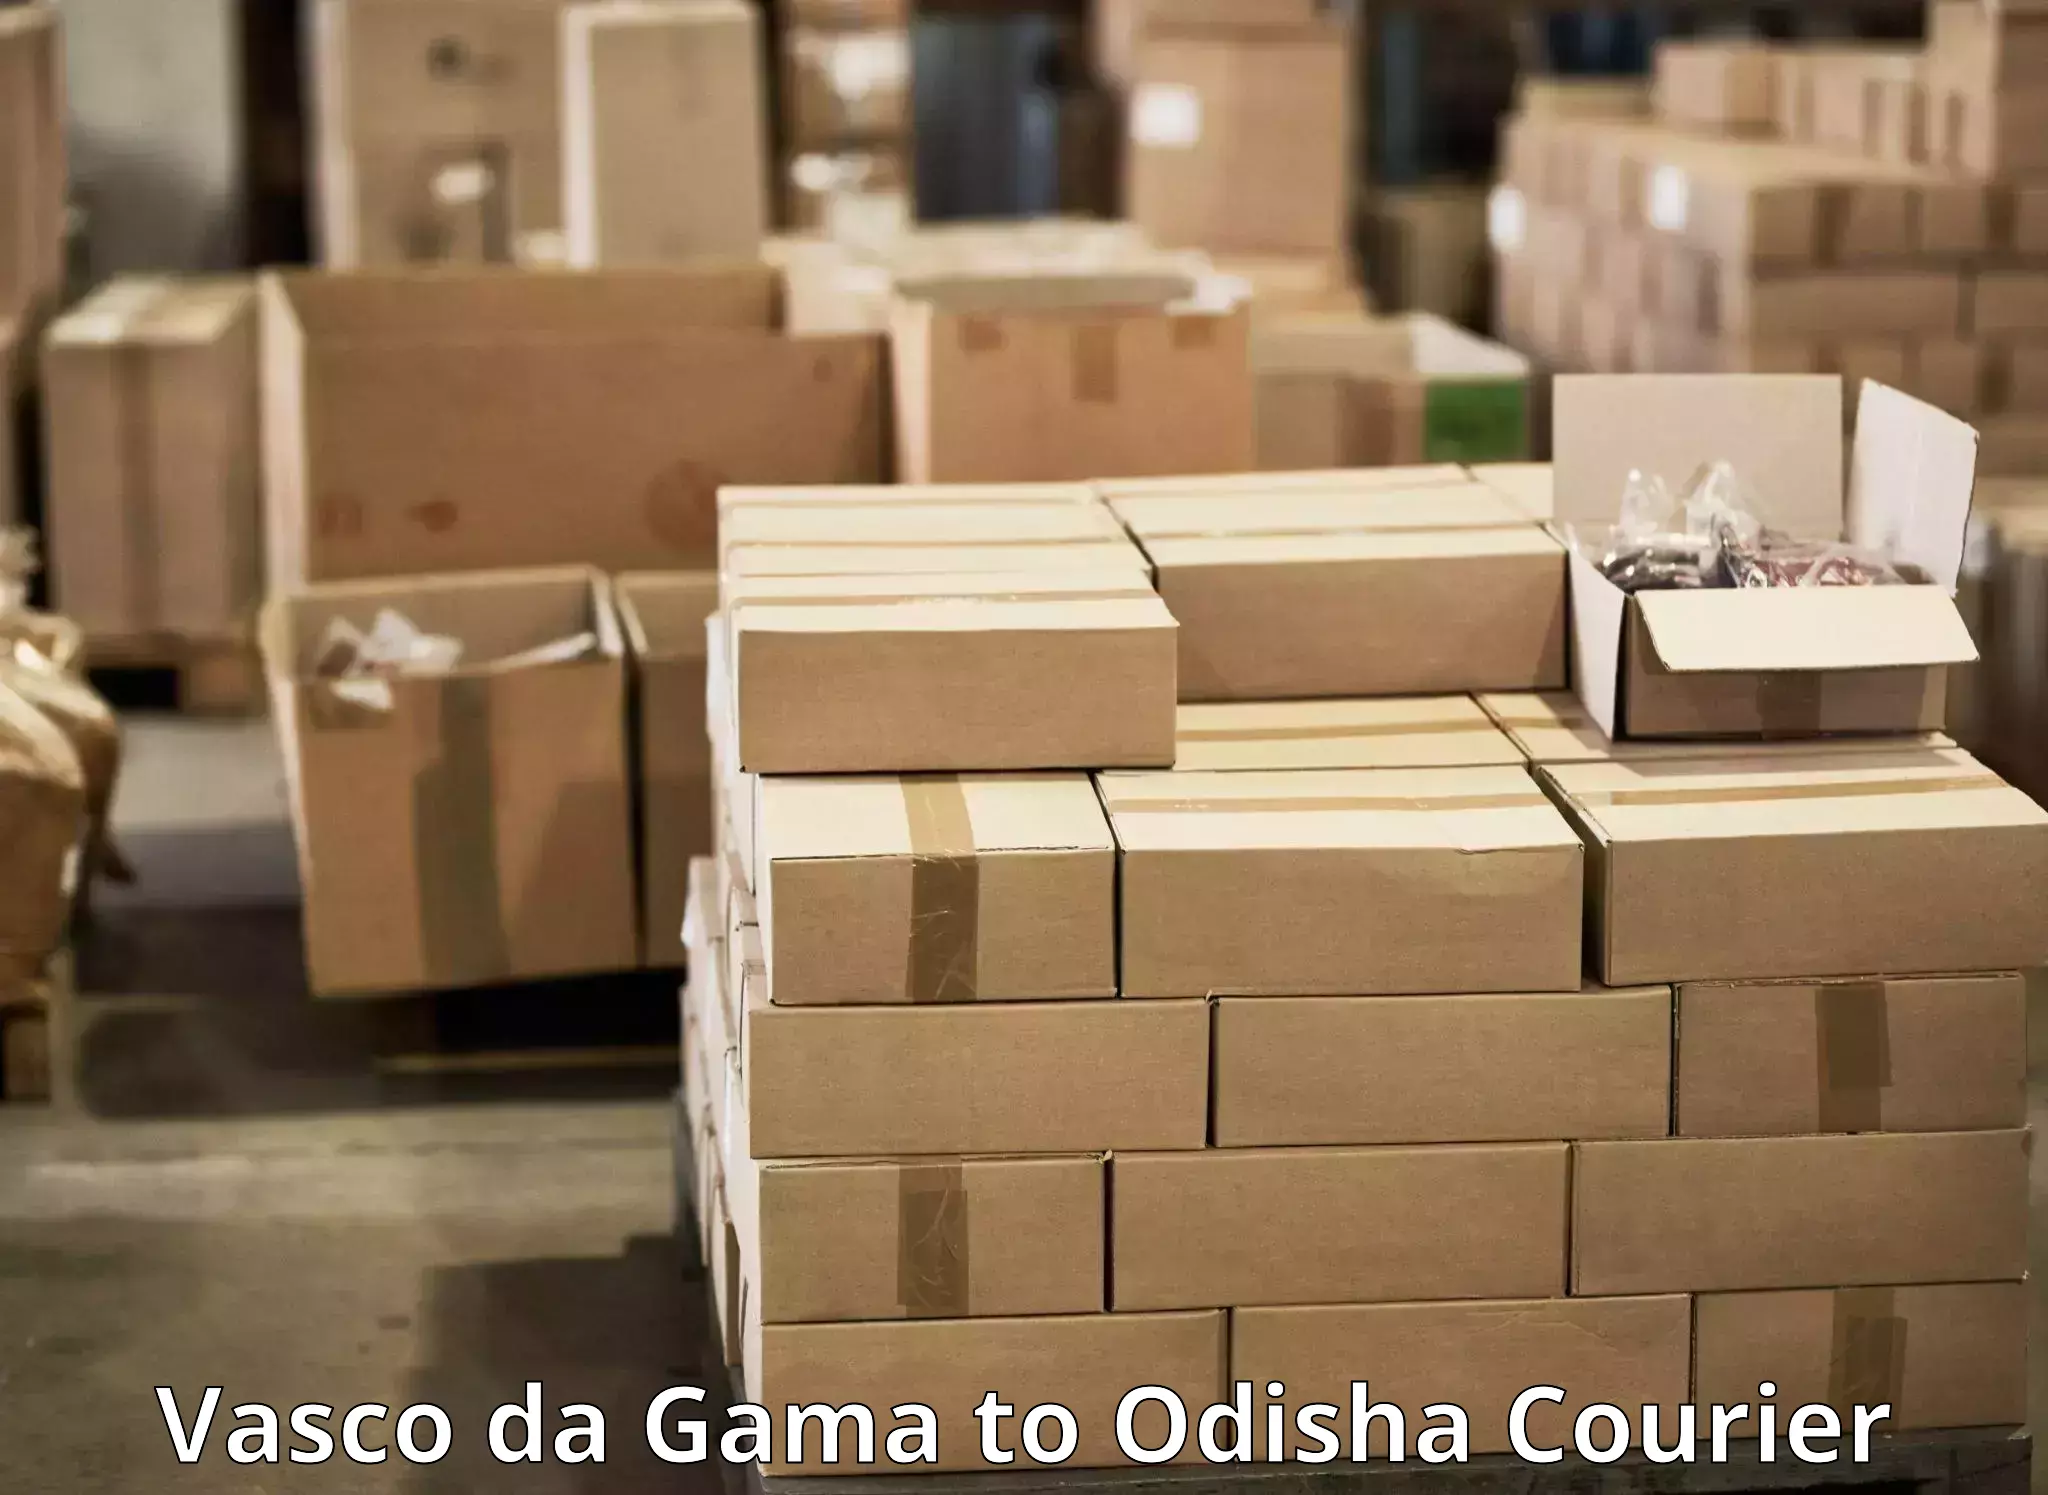 Efficient parcel transport Vasco da Gama to Loisingha